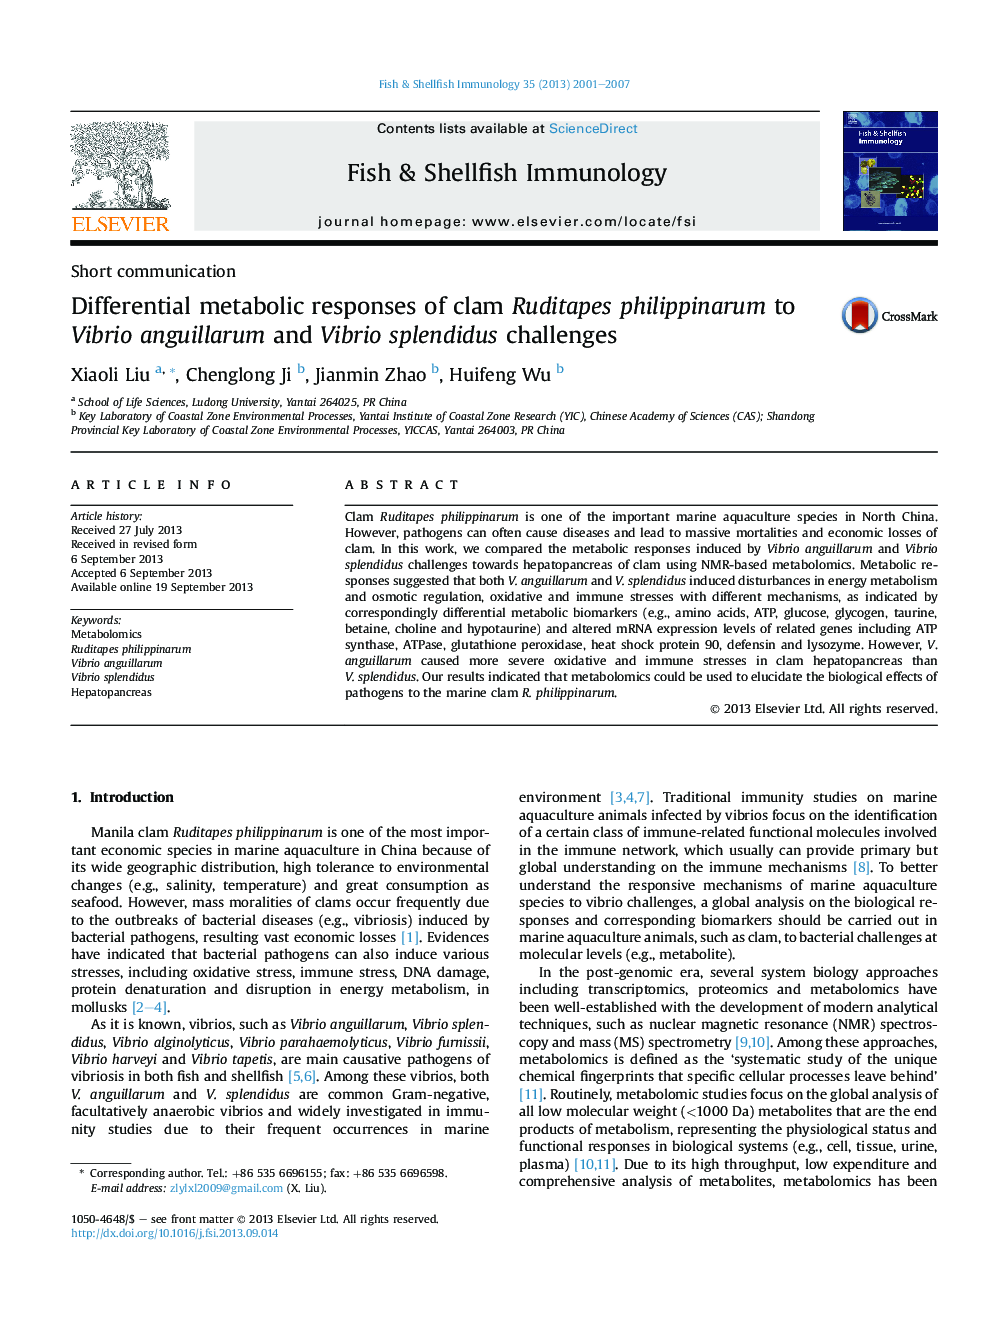 Differential metabolic responses of clam Ruditapes philippinarum to Vibrio anguillarum and Vibrio splendidus challenges